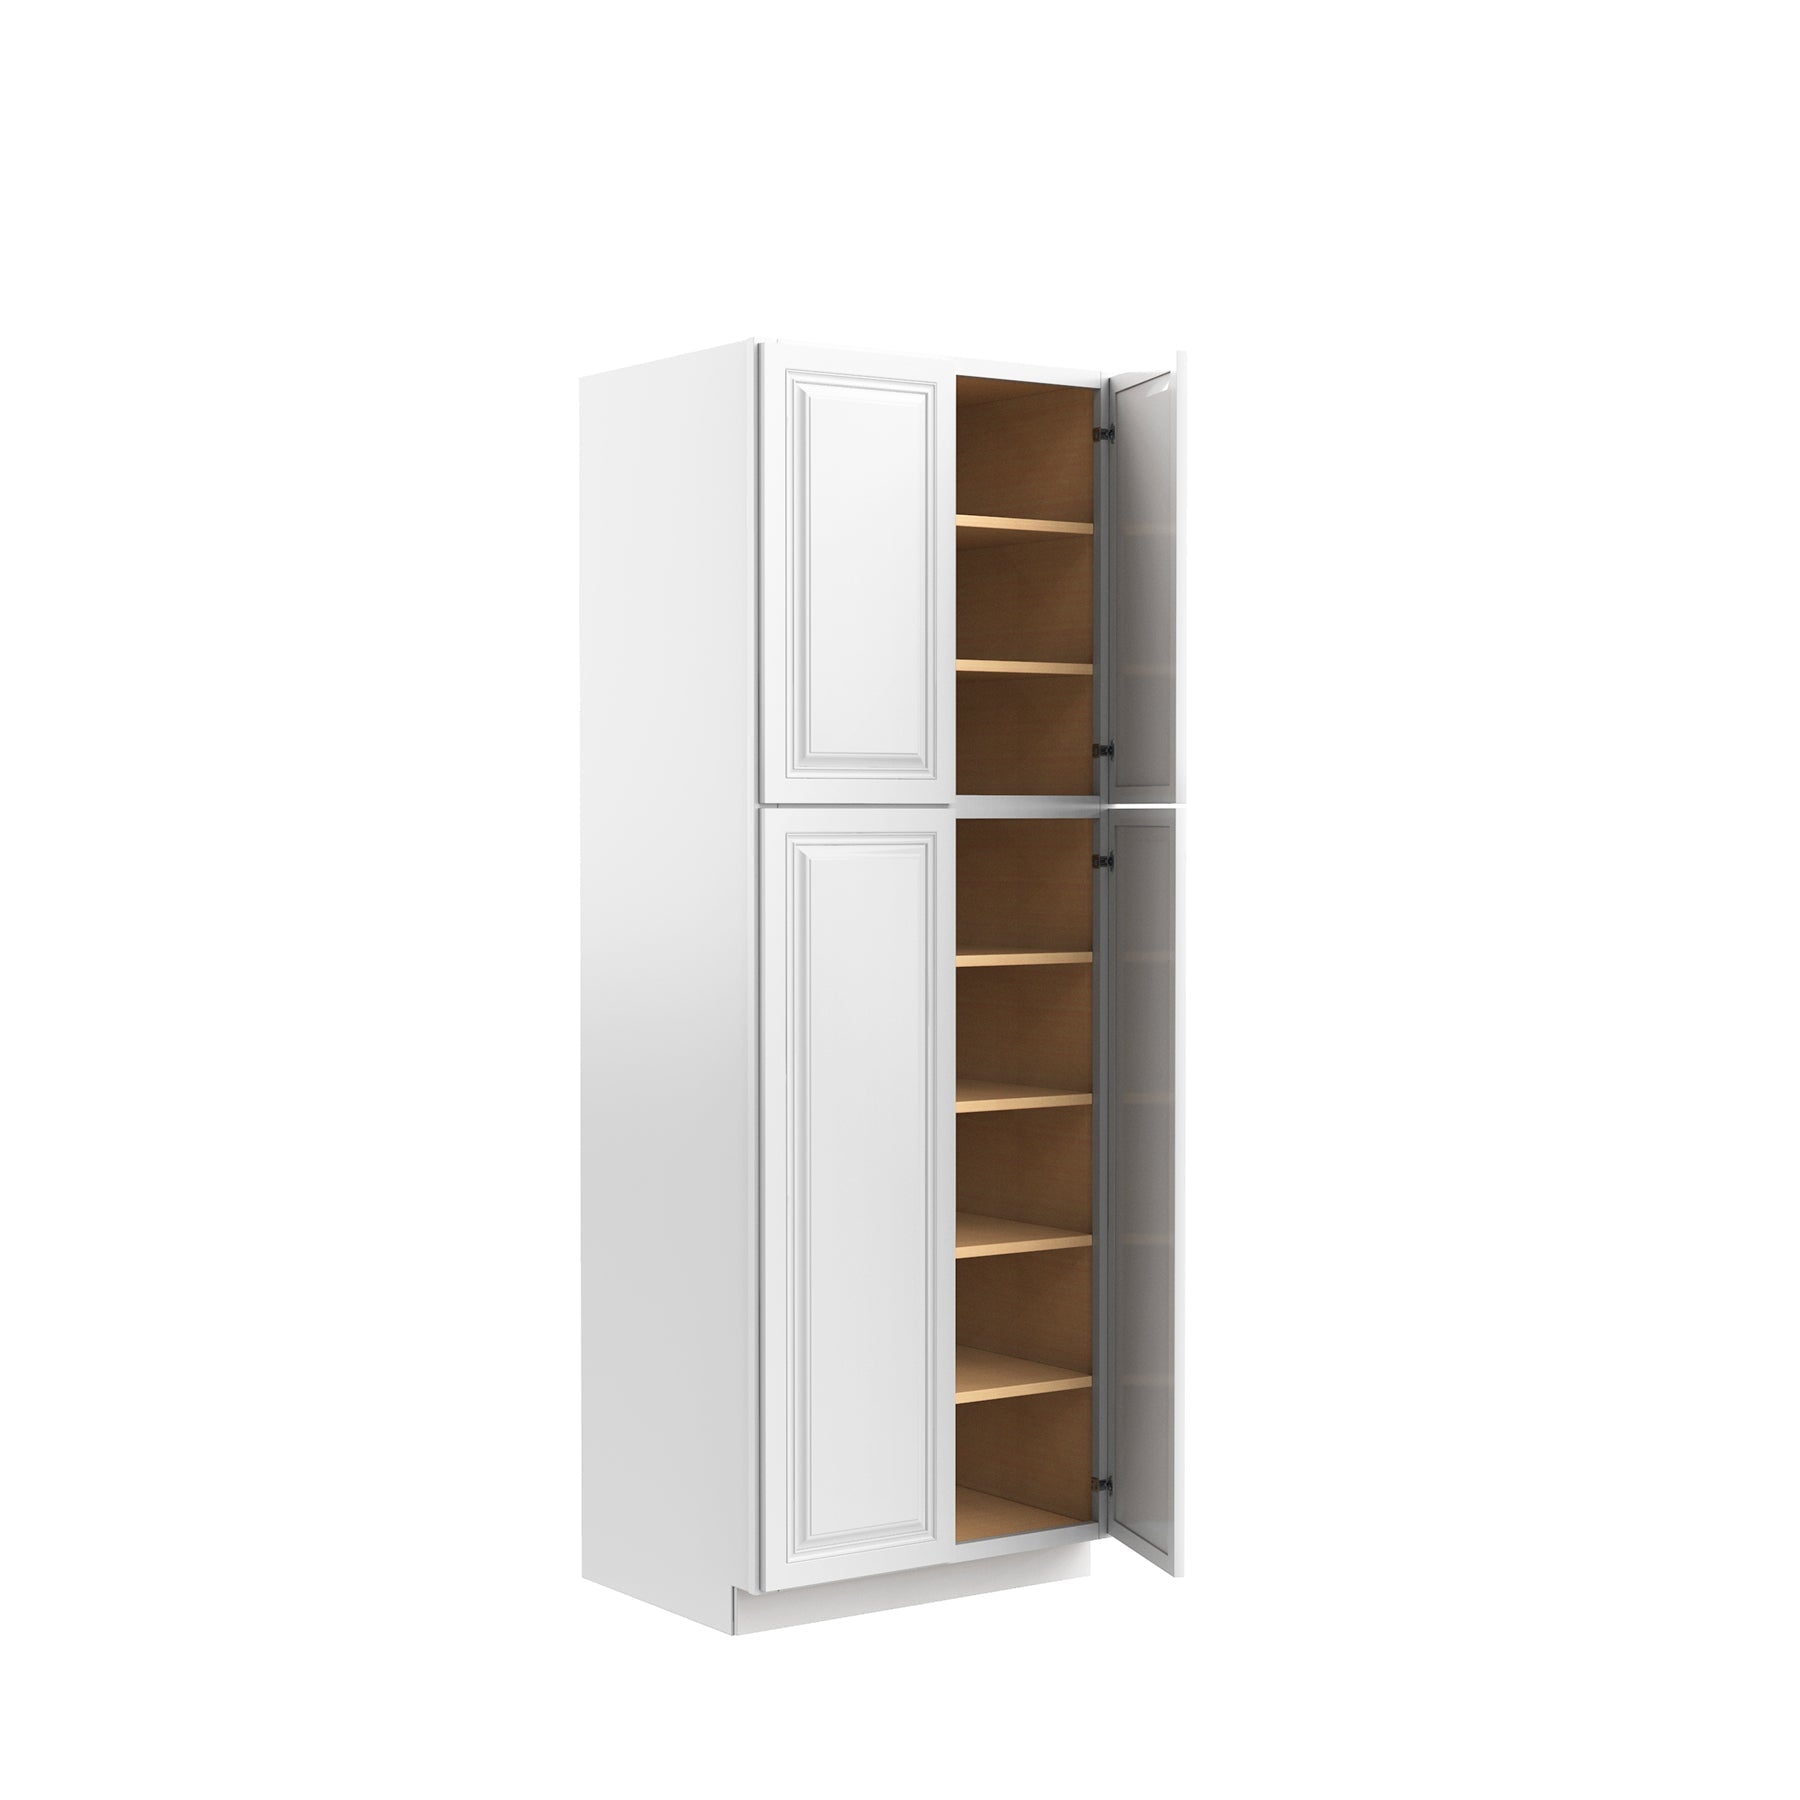 RTA - Park Avenue White - Double Door Utility Cabinet | 30"W x 84"H x 24"D